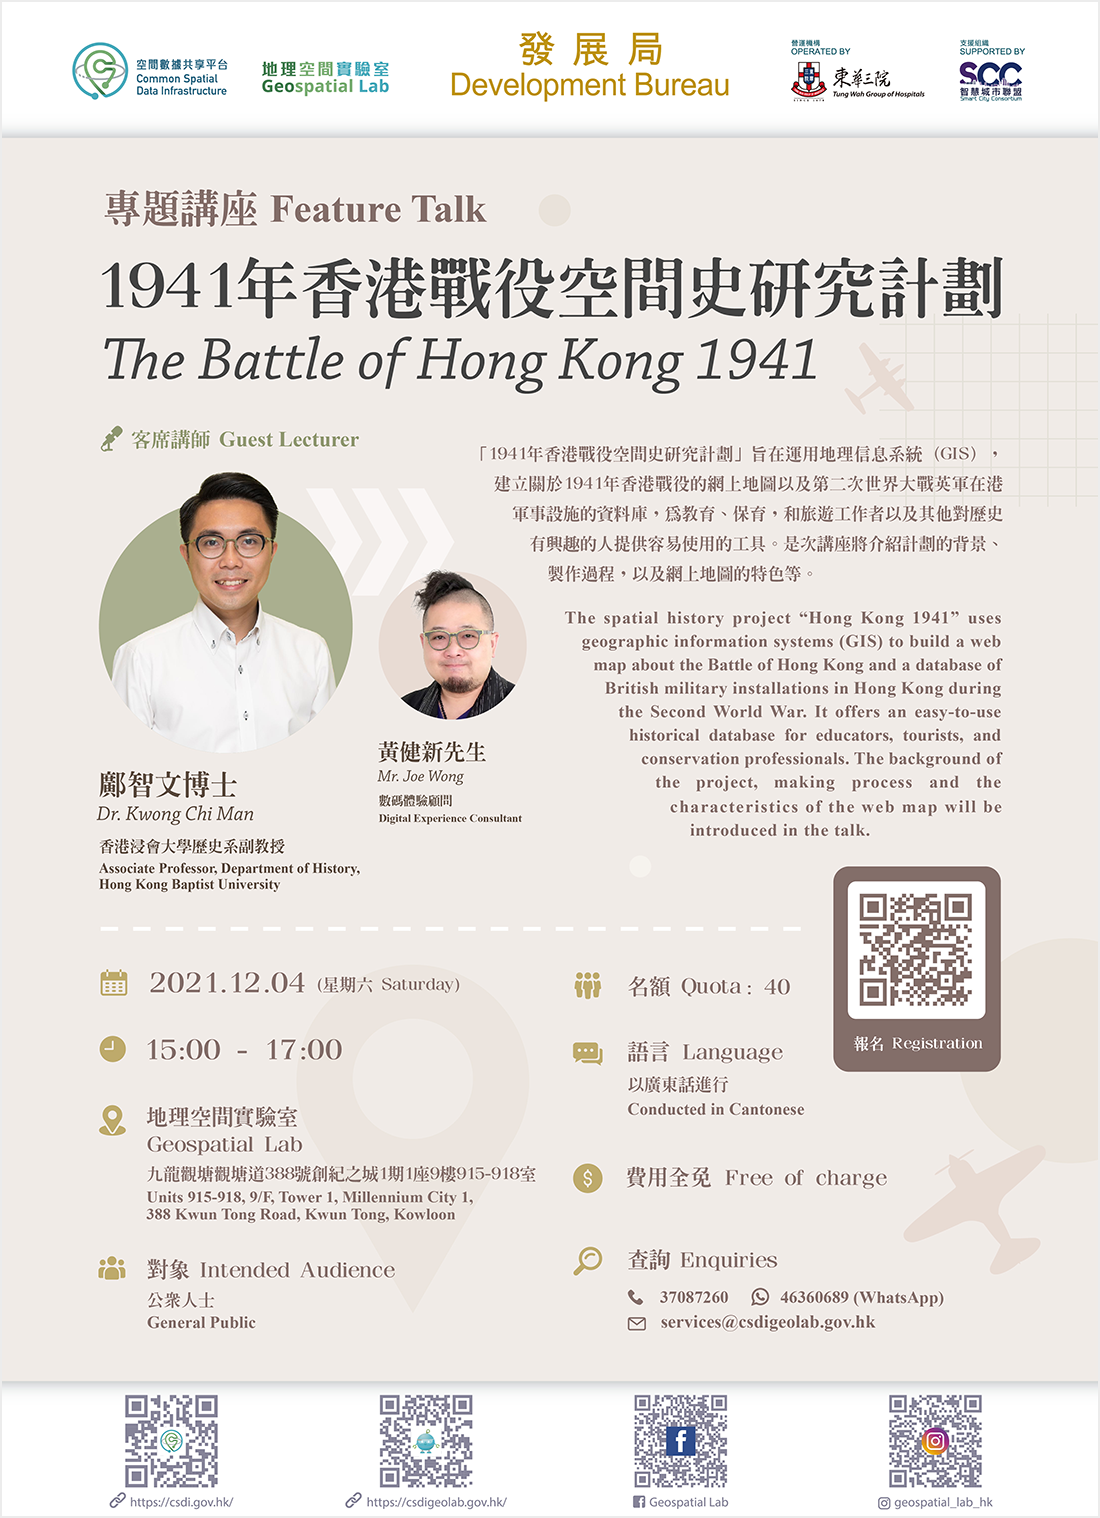 Feature Talk - The Battle of Hong Kong 1941